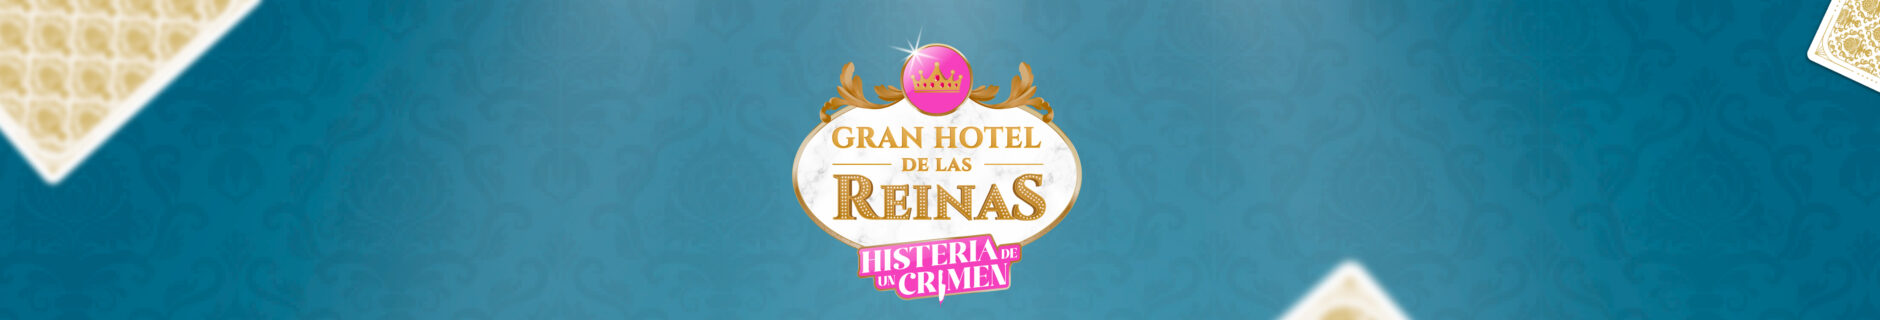 GRAN HOTEL DE LAS REINAS - HISTERIA DE UN CRIMEN 1